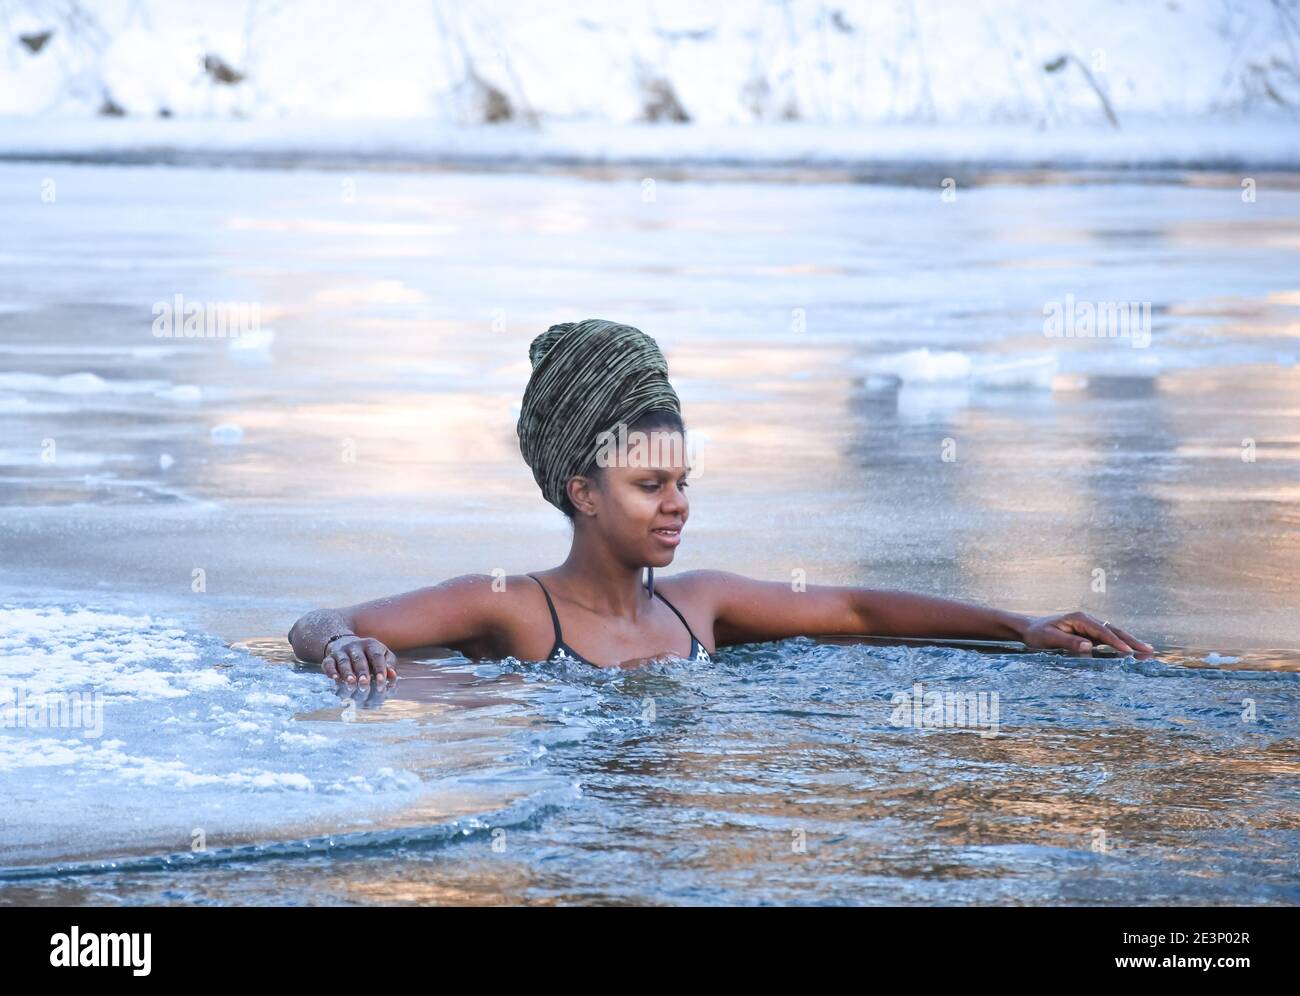 Schönes Mädchen genießen Winter und Schwimmen im kalten Wasser eines Sees  oder Flusses, kalte Therapie, Eis schwimmen Stockfotografie - Alamy